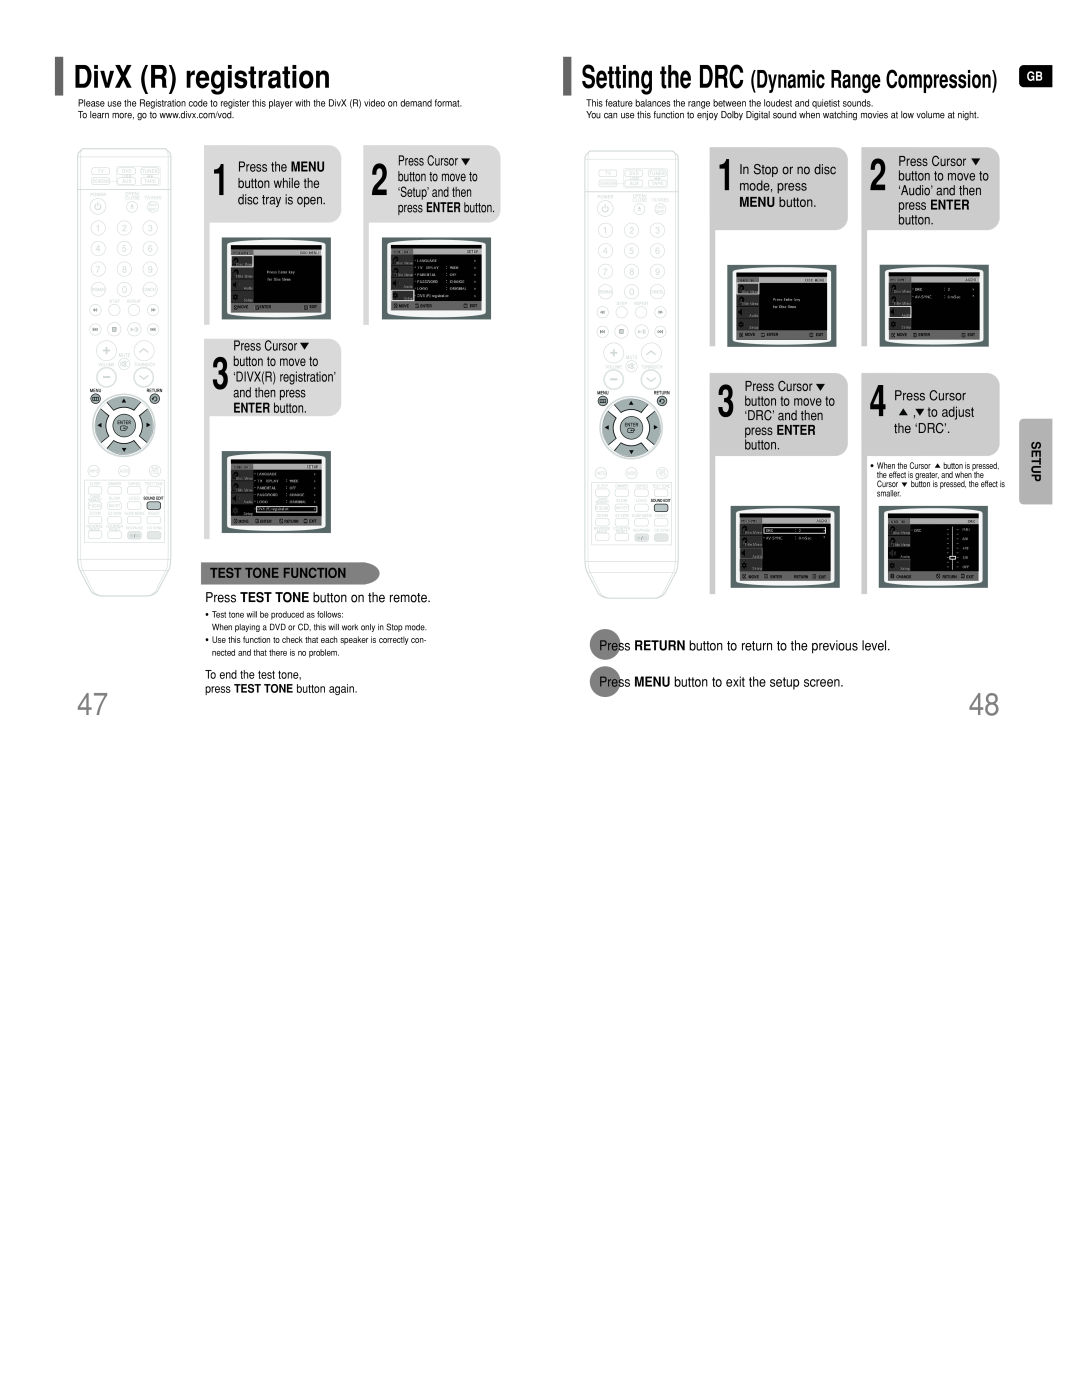 Samsung HT-DT79 DivX R registration, In Stop or no disc, mode, press, MENU button, Press Cursor to adjust the ‘DRC’, Setup 